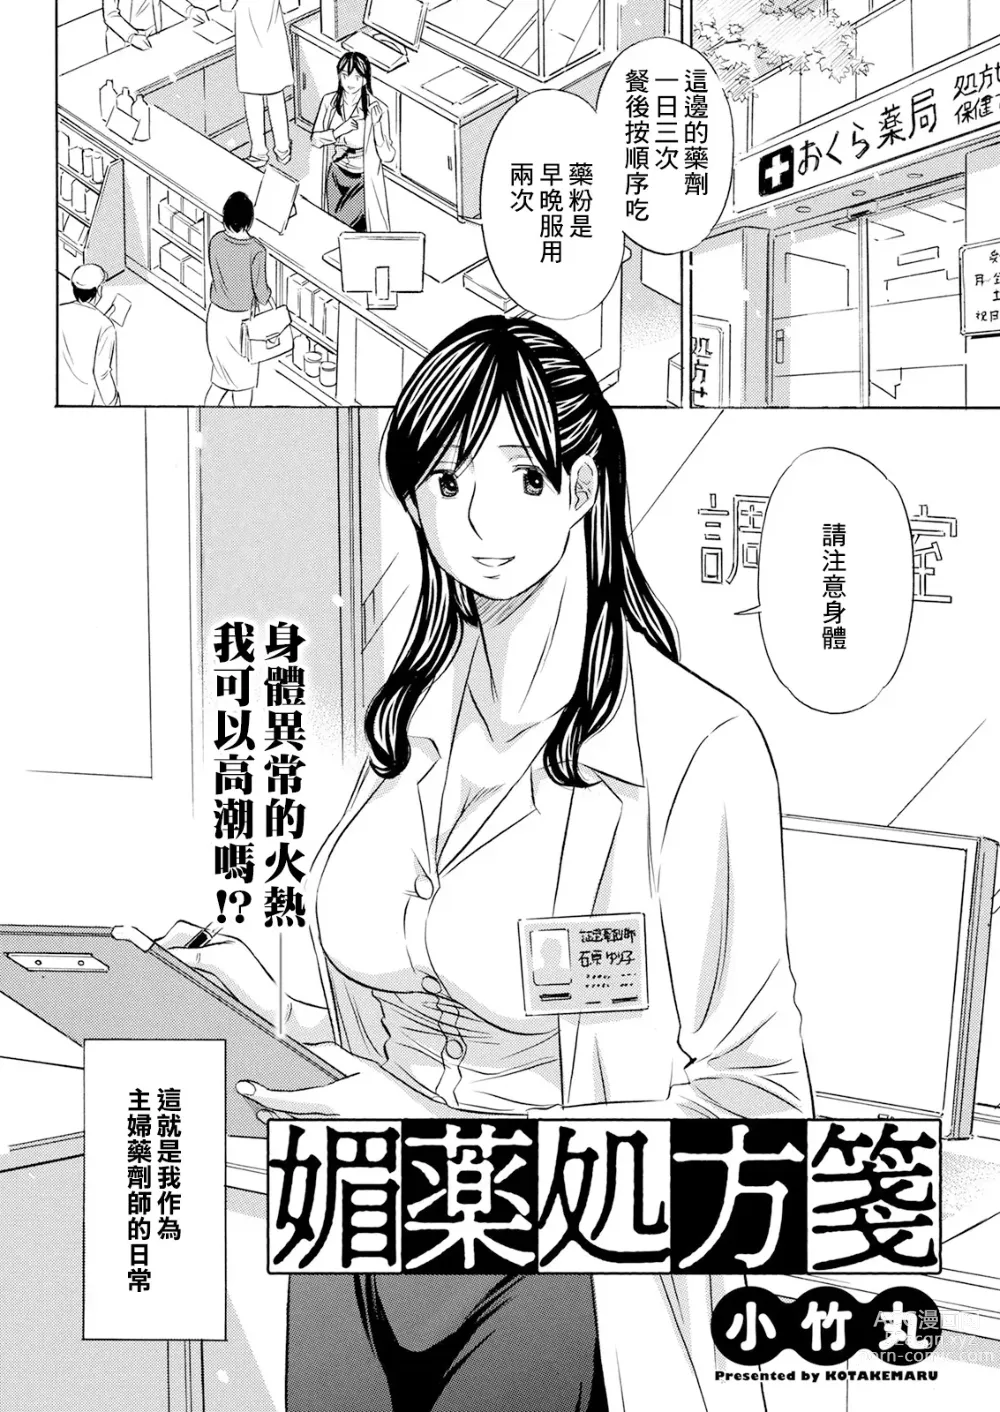 Page 2 of manga Biyaku Shohousen